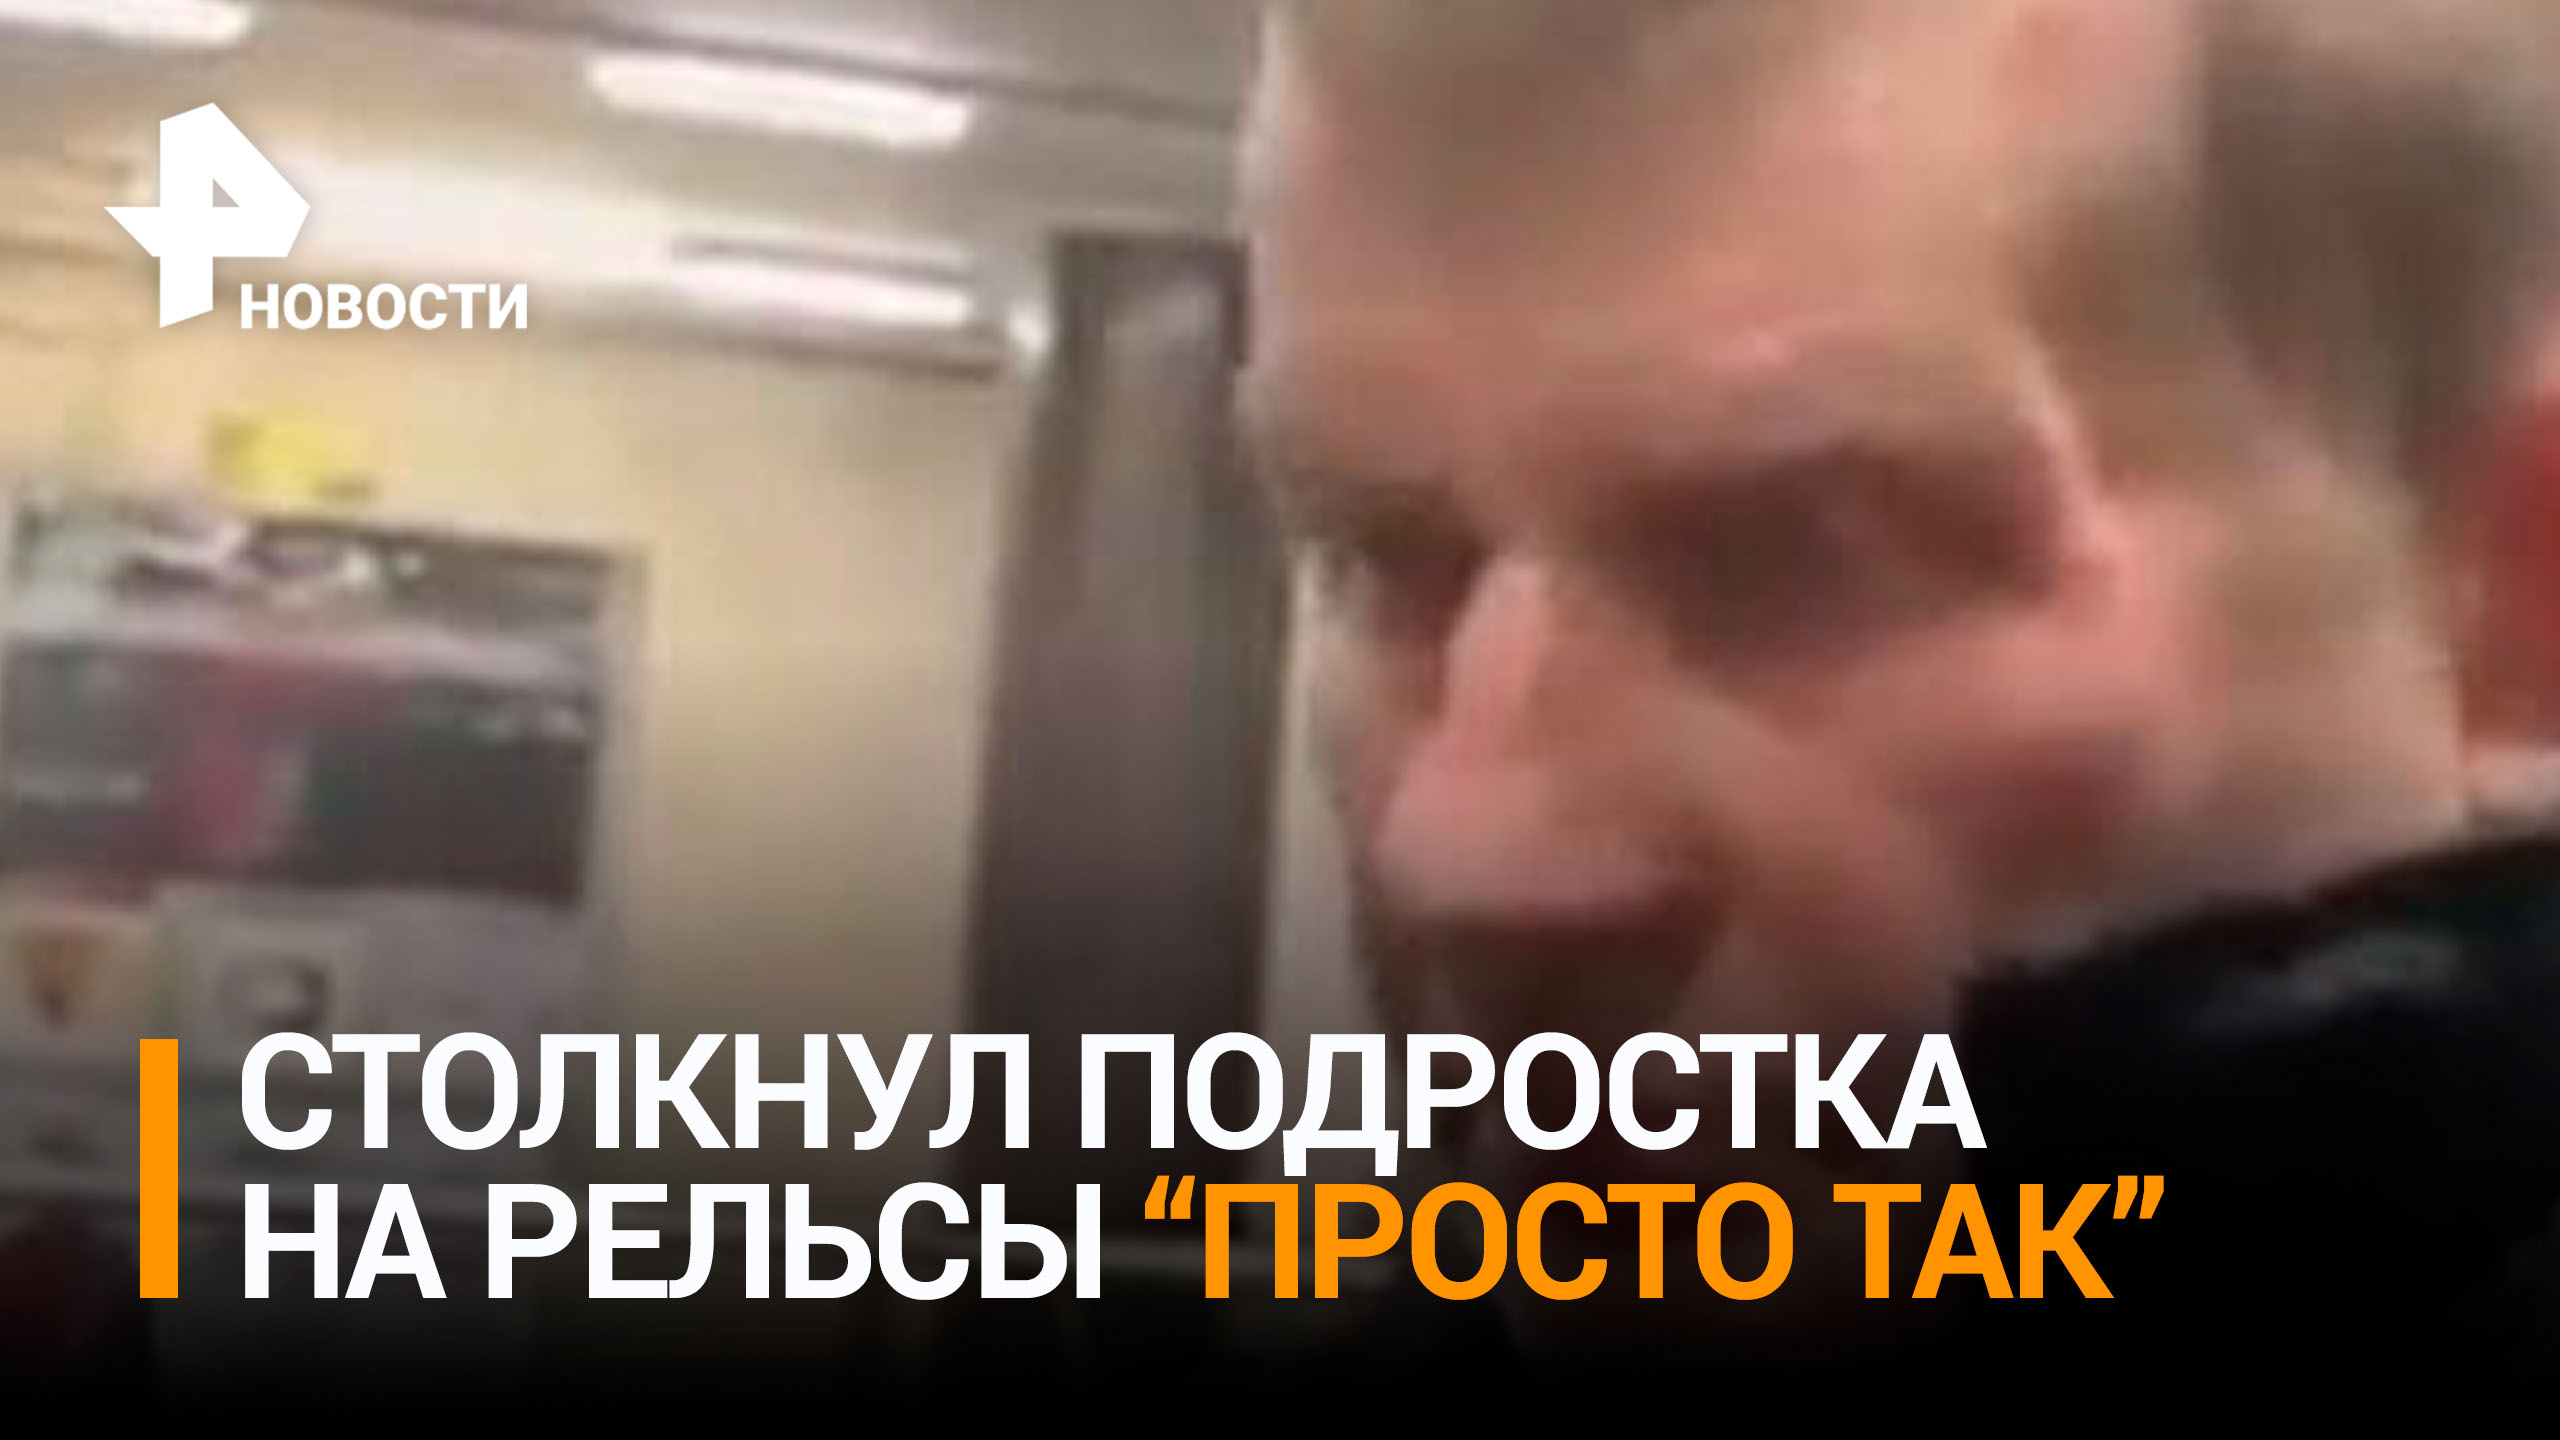 Мужчина заявил, что "просто так" столкнул подростка под поезд в Москве / РЕН Новости